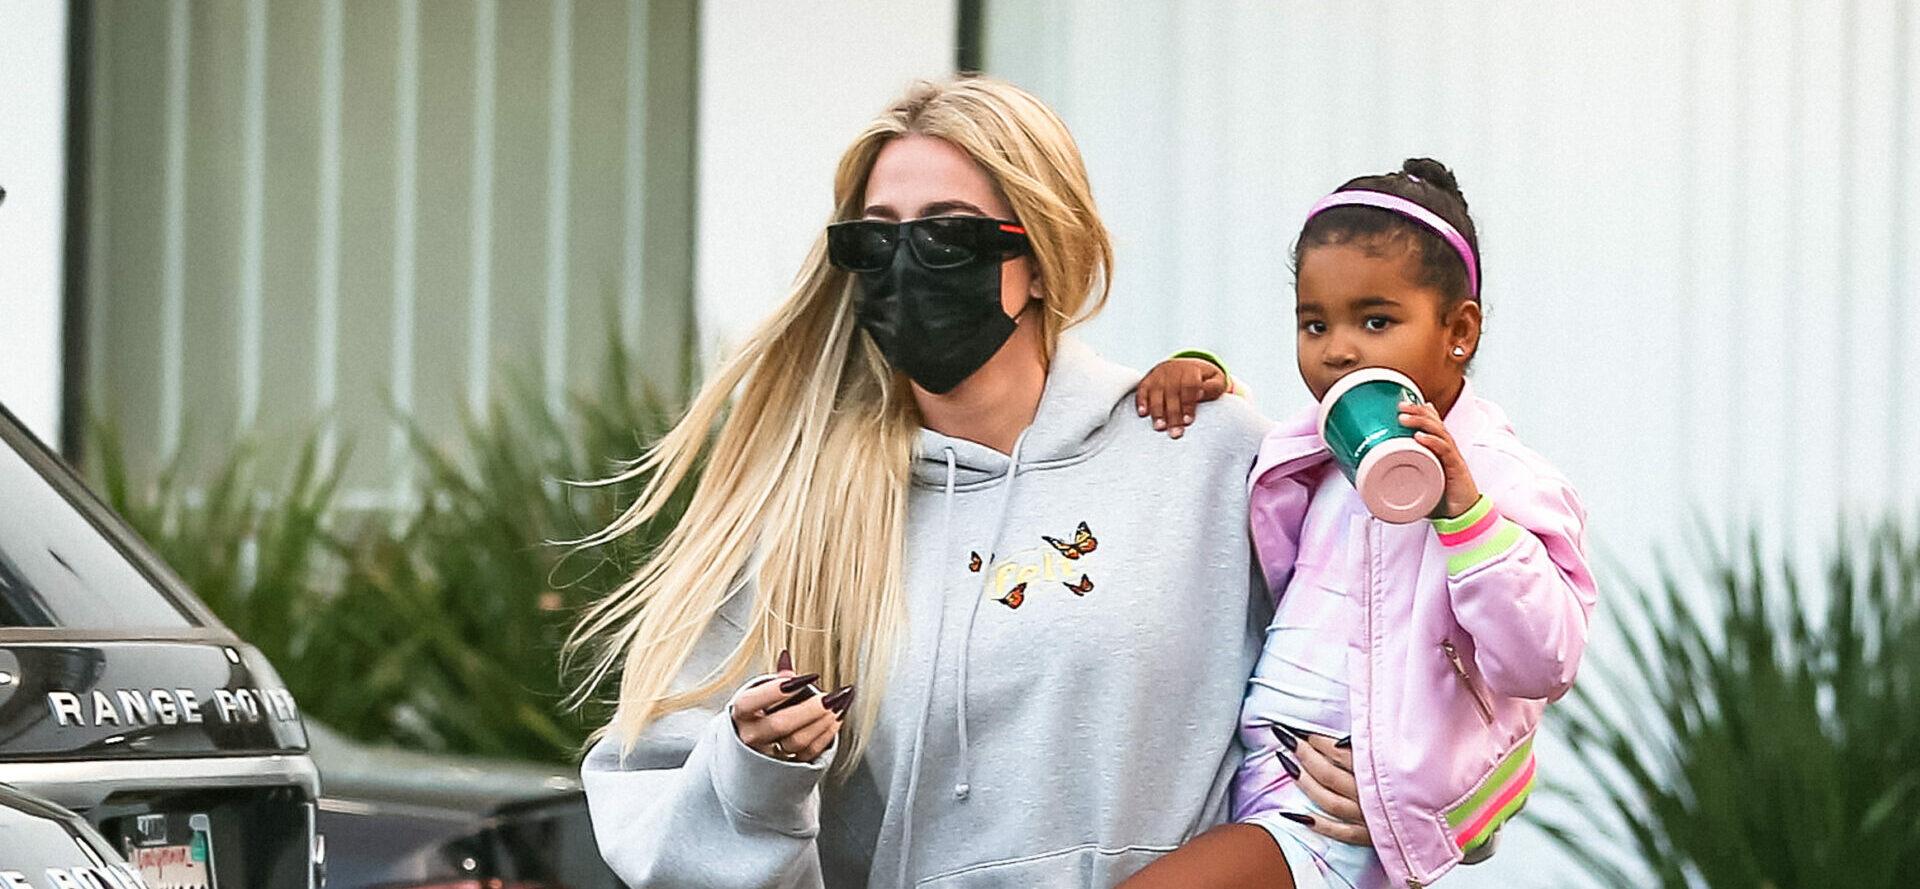 Khloe Kardashian runs errands in West Hollywood